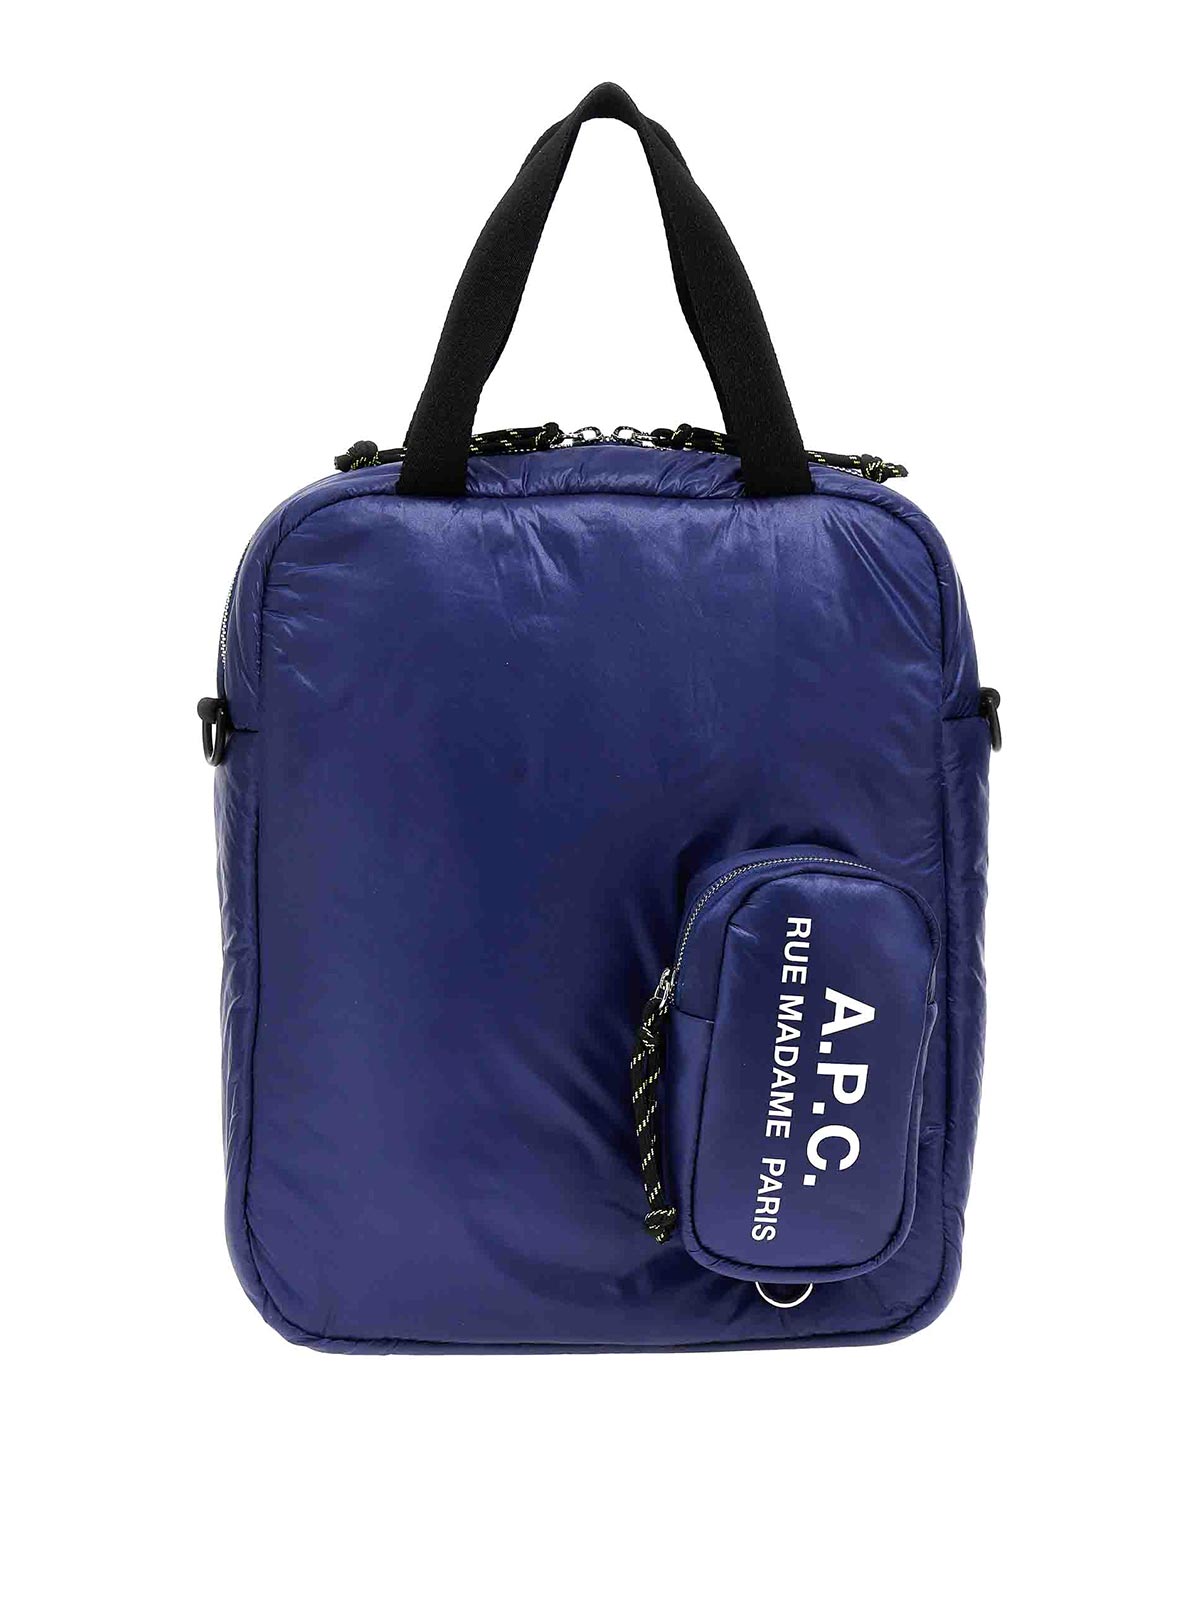 Apc Puffy Shopping Bag In Blue